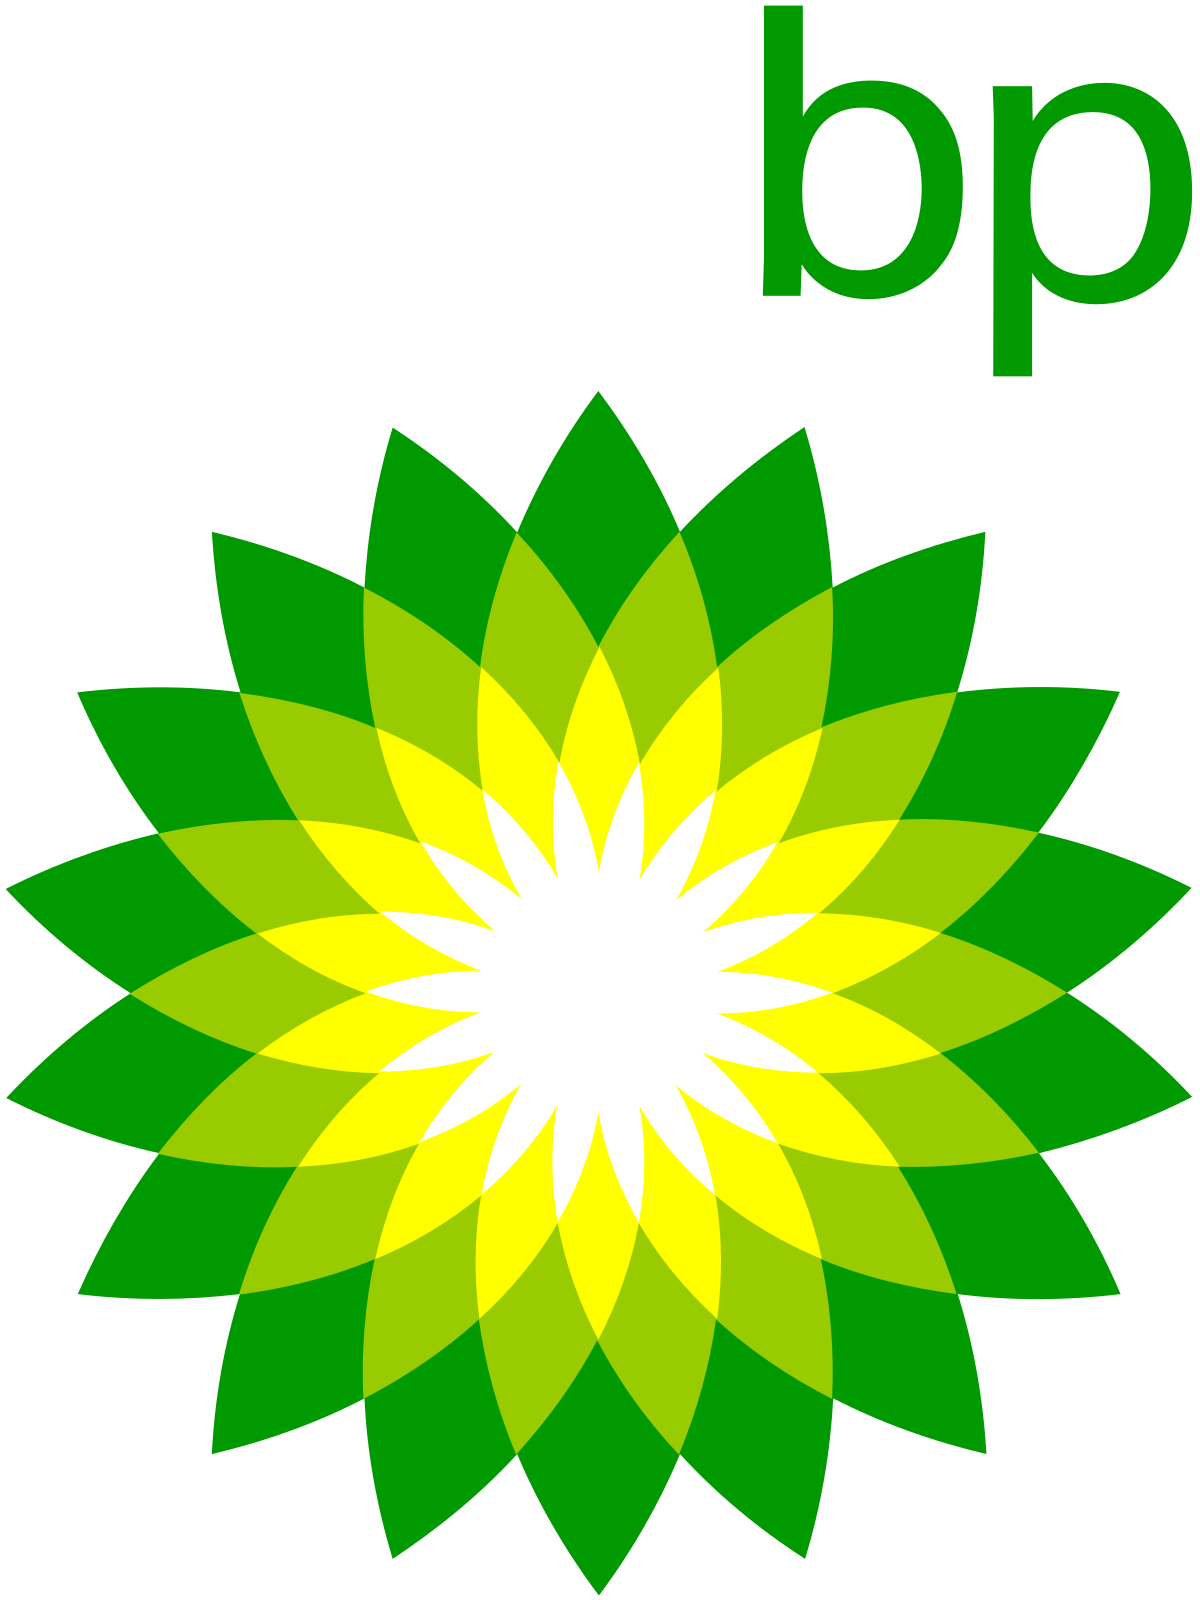 BP PLC (RETAIL AND SUPPLYCHAIN SWTIZERLAND)